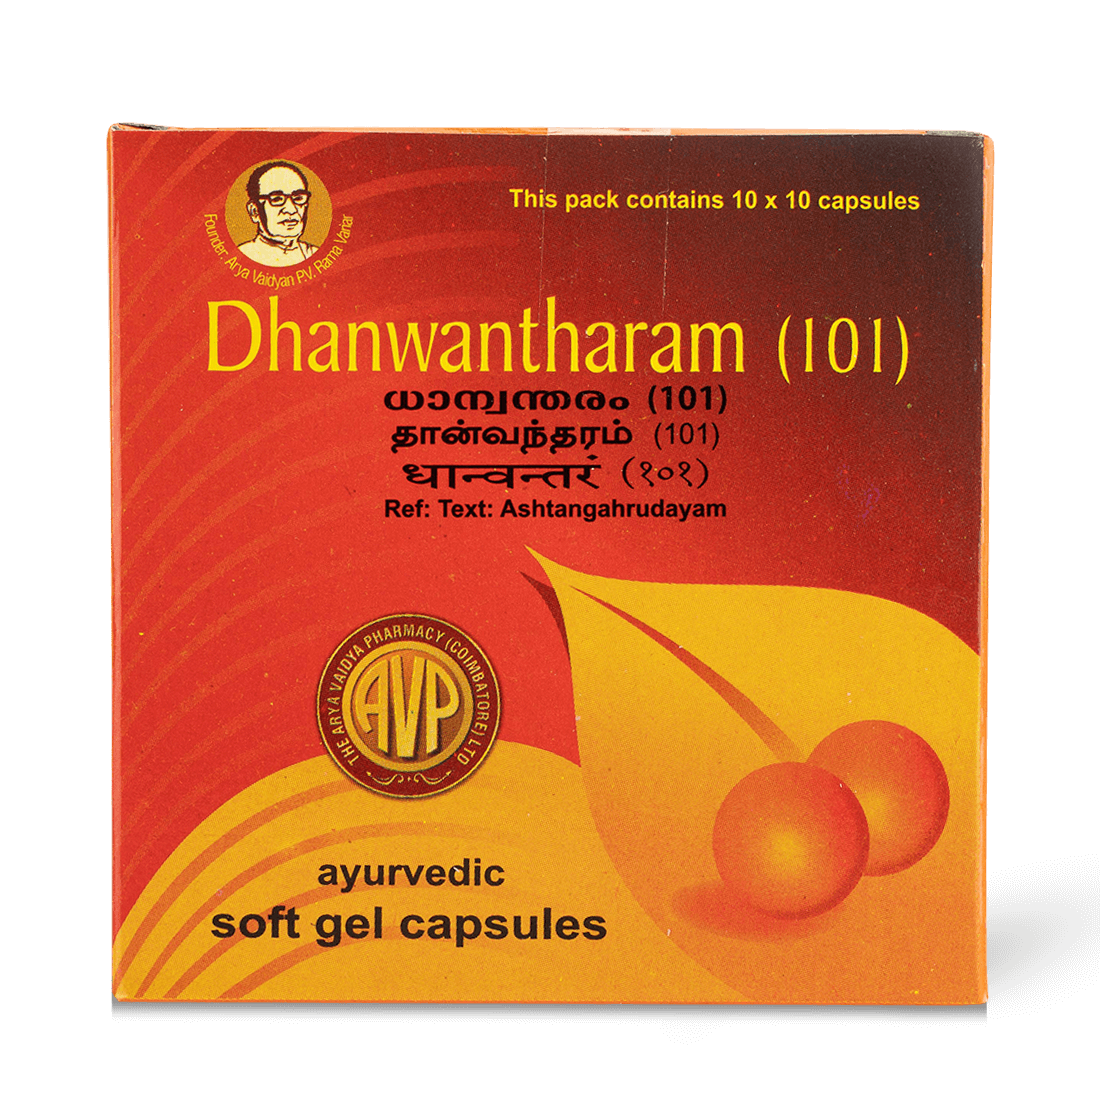 Dhanwantharam (101) Capsule